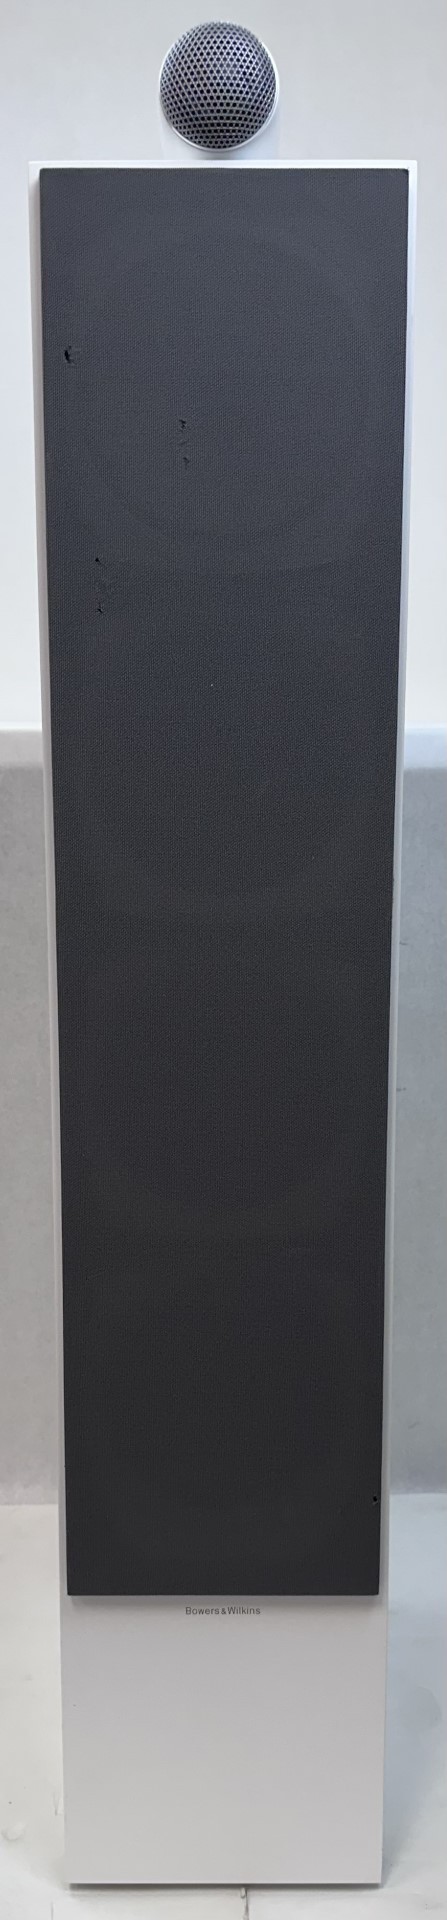 Bowers & Wilkins 700 Series 702 S2 Floorstanding Speaker w/ Tweeter White - 9355